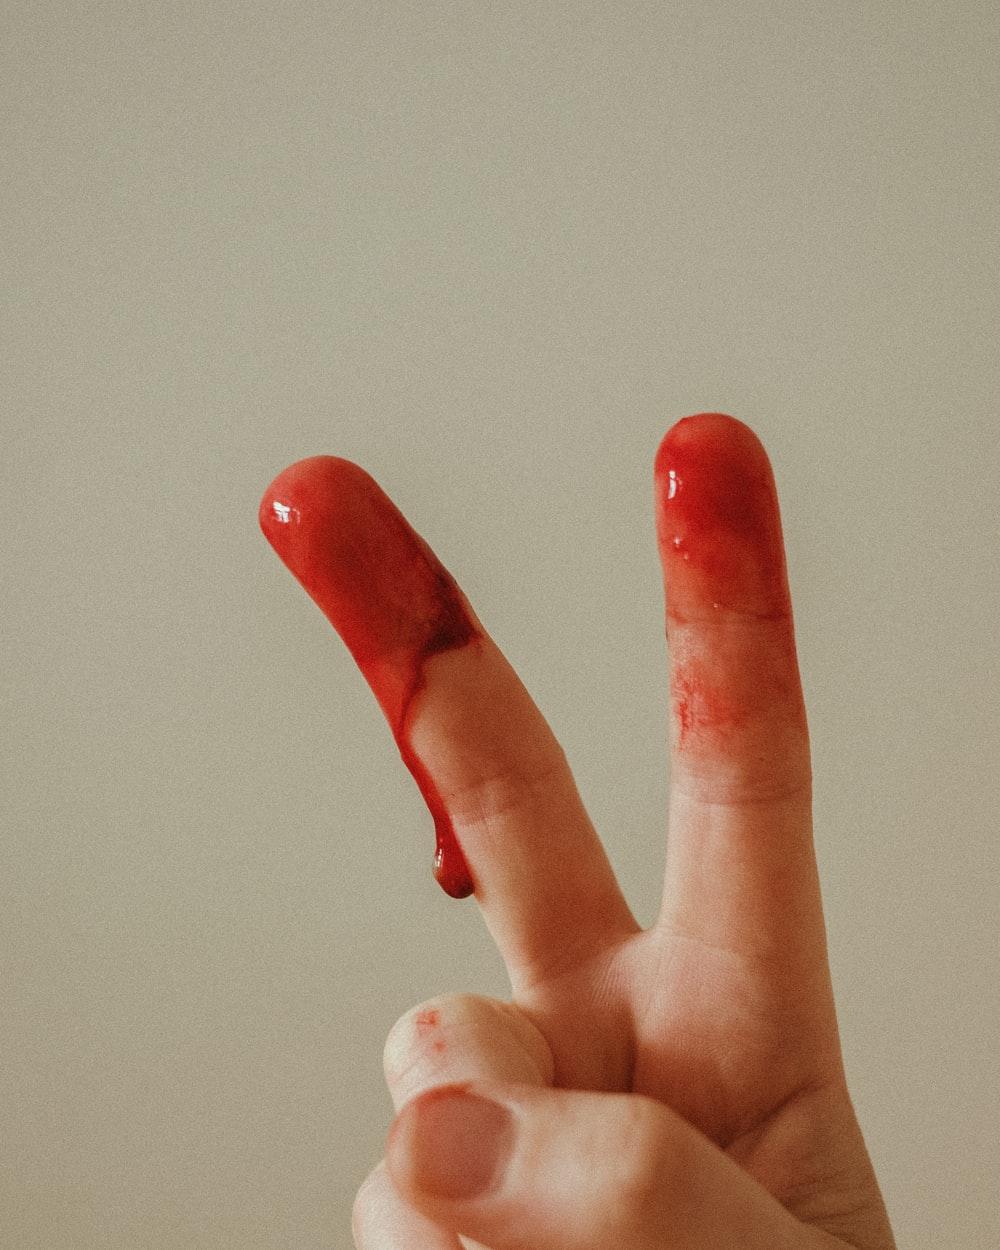 دانلود عکس دست خونی فیک و الکی با زمینه ساده 